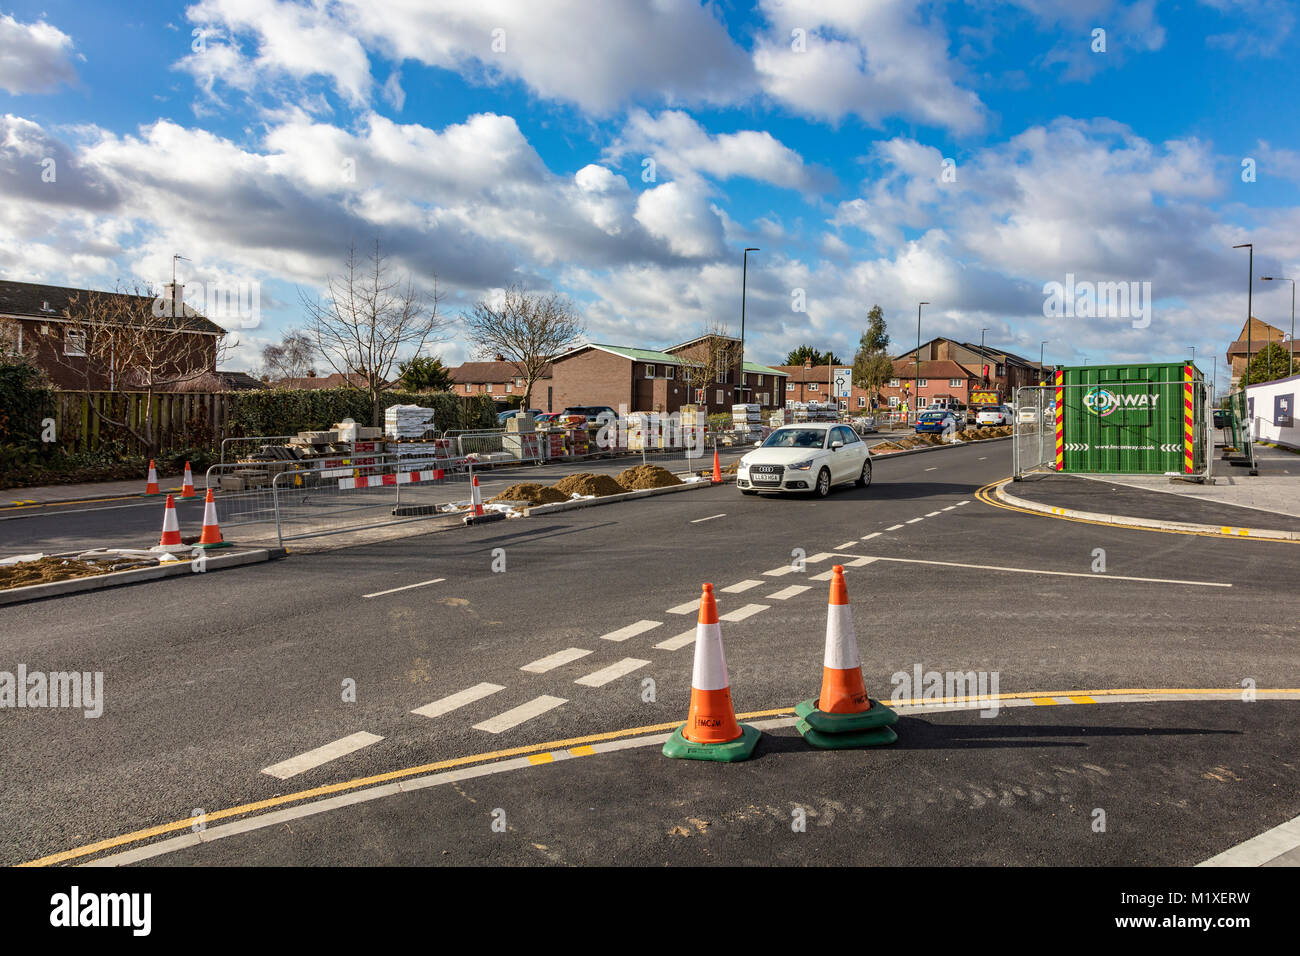 Bellway développement de Bexleyheath, y compris l'amélioration de la route, Bexley, Londres, UK Banque D'Images